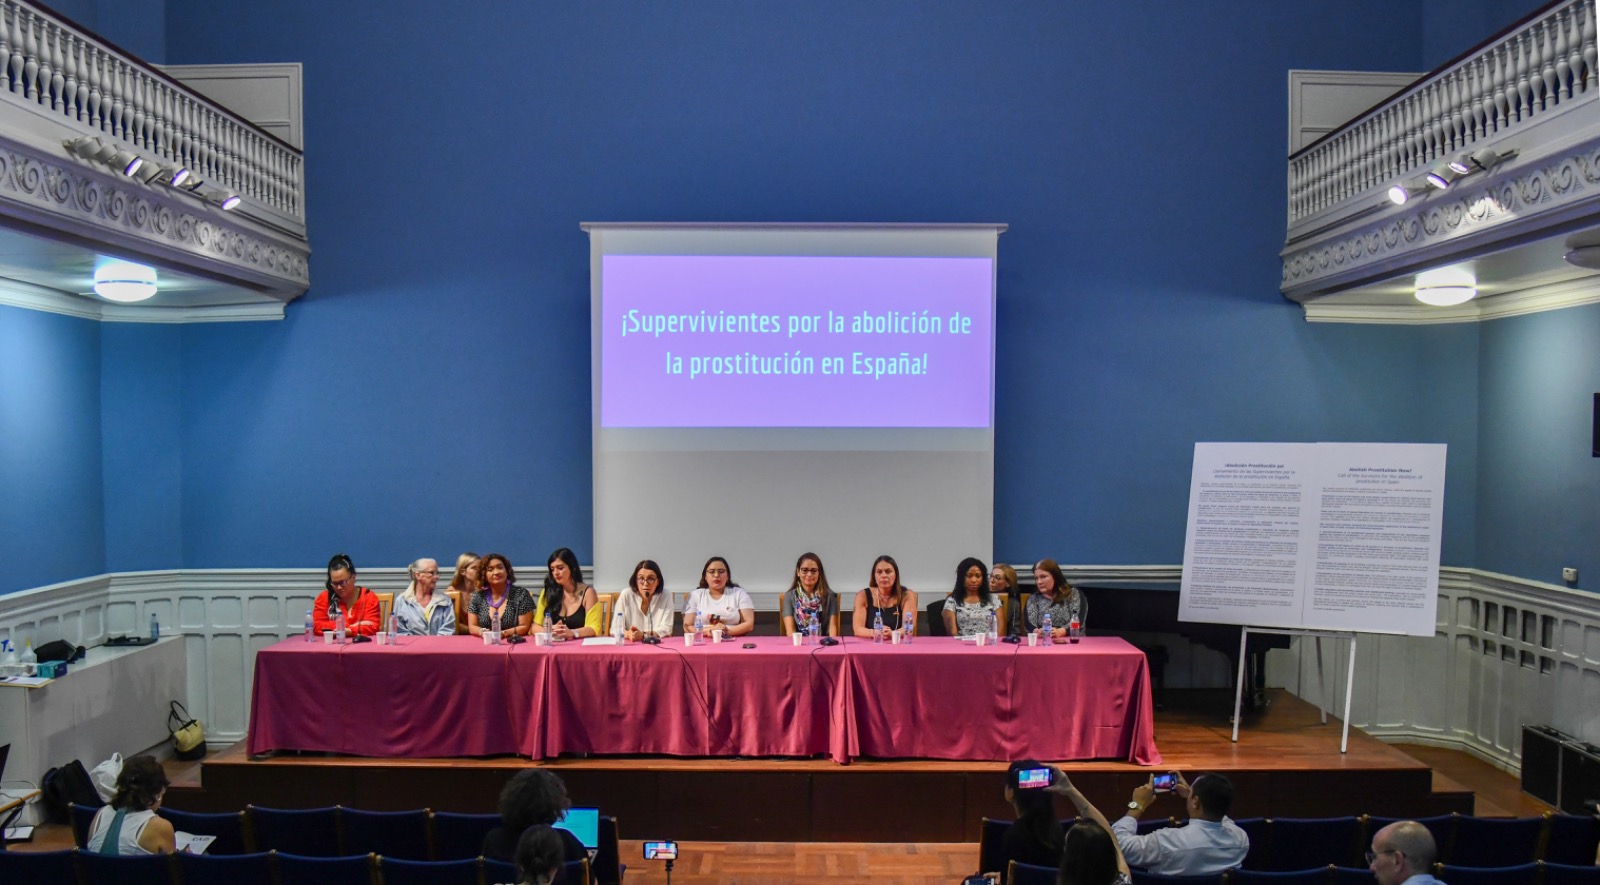 Mesa con el panel internacional de supervivientes de la prostitución.